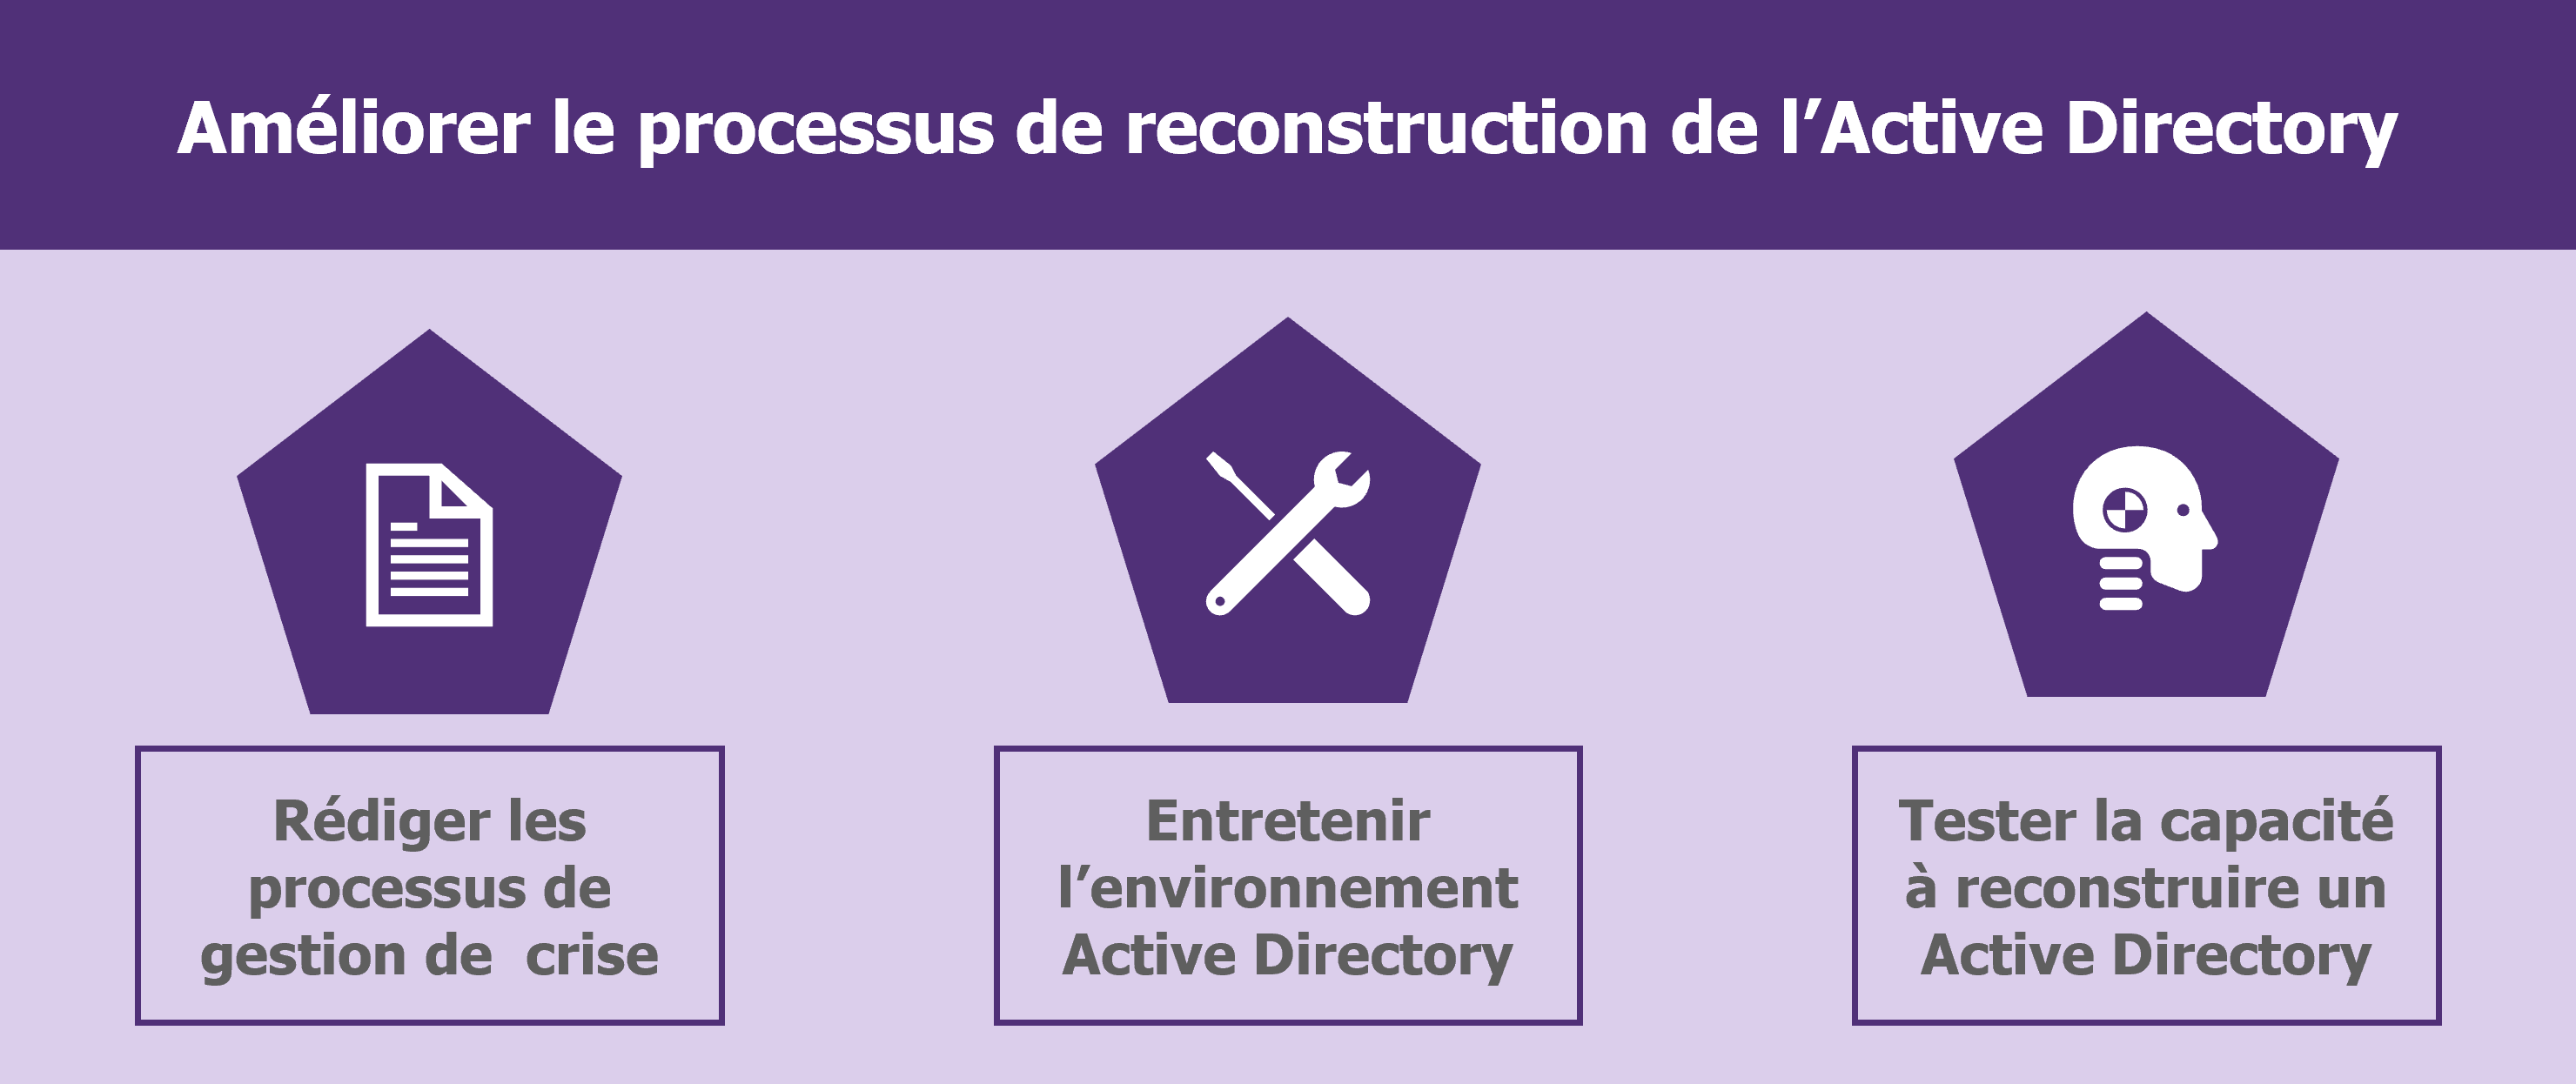 Synthèse - Comment préparer la reconstruction de l'Active Directory